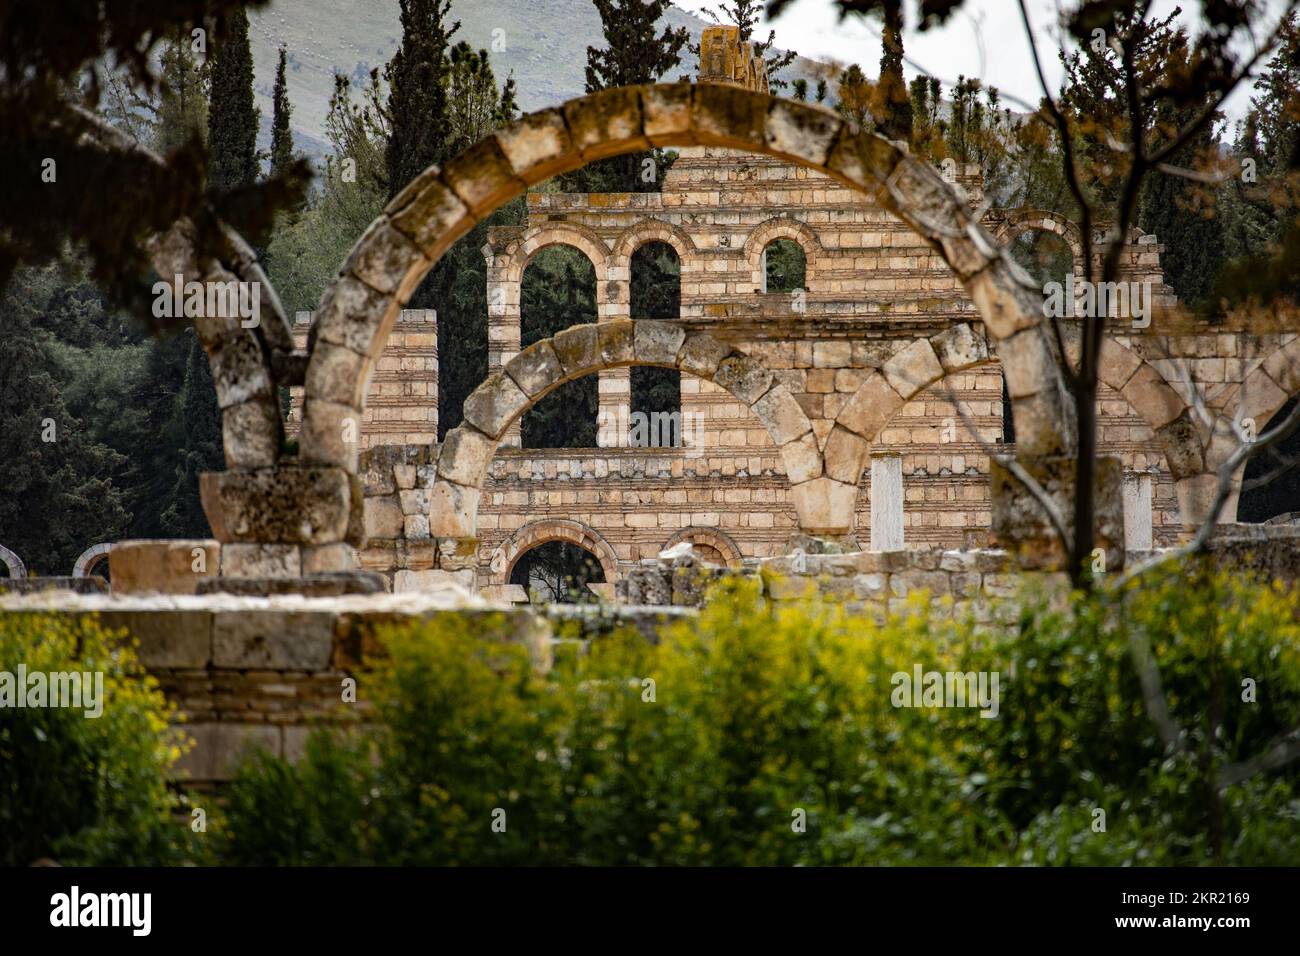 Anjar Citadel, Aanjar, Lebanon Stock Photo